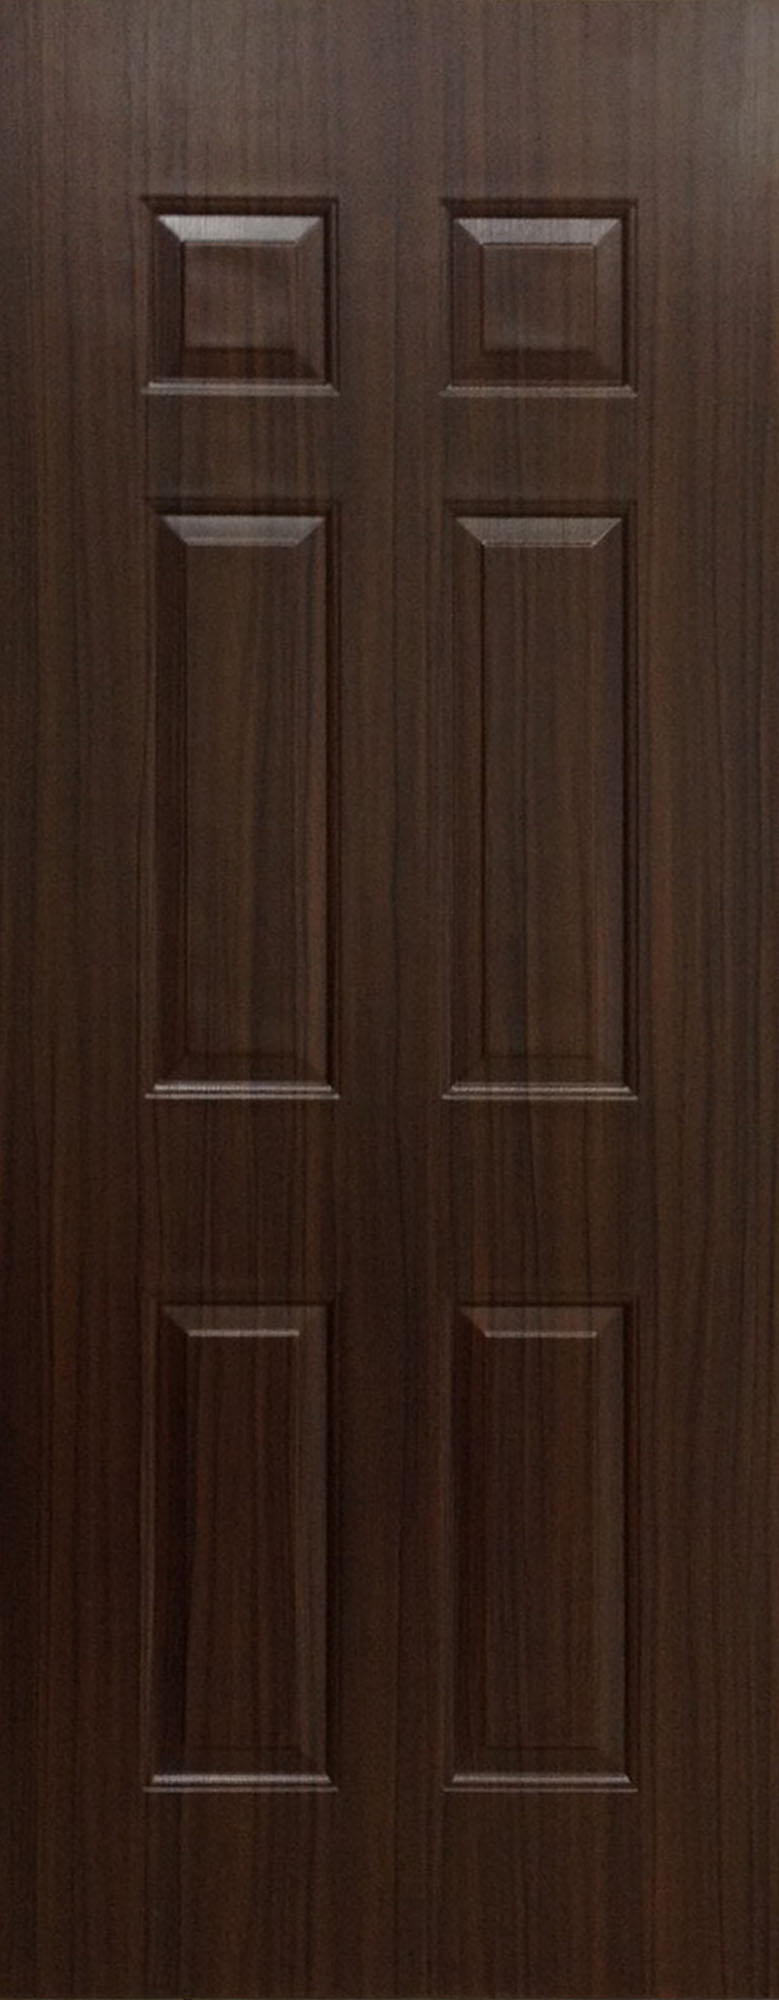 ประตูUPVC ผิวหน้าลายไม้  สีBrownieOak ลูกฟัก 6 ช่องตรง